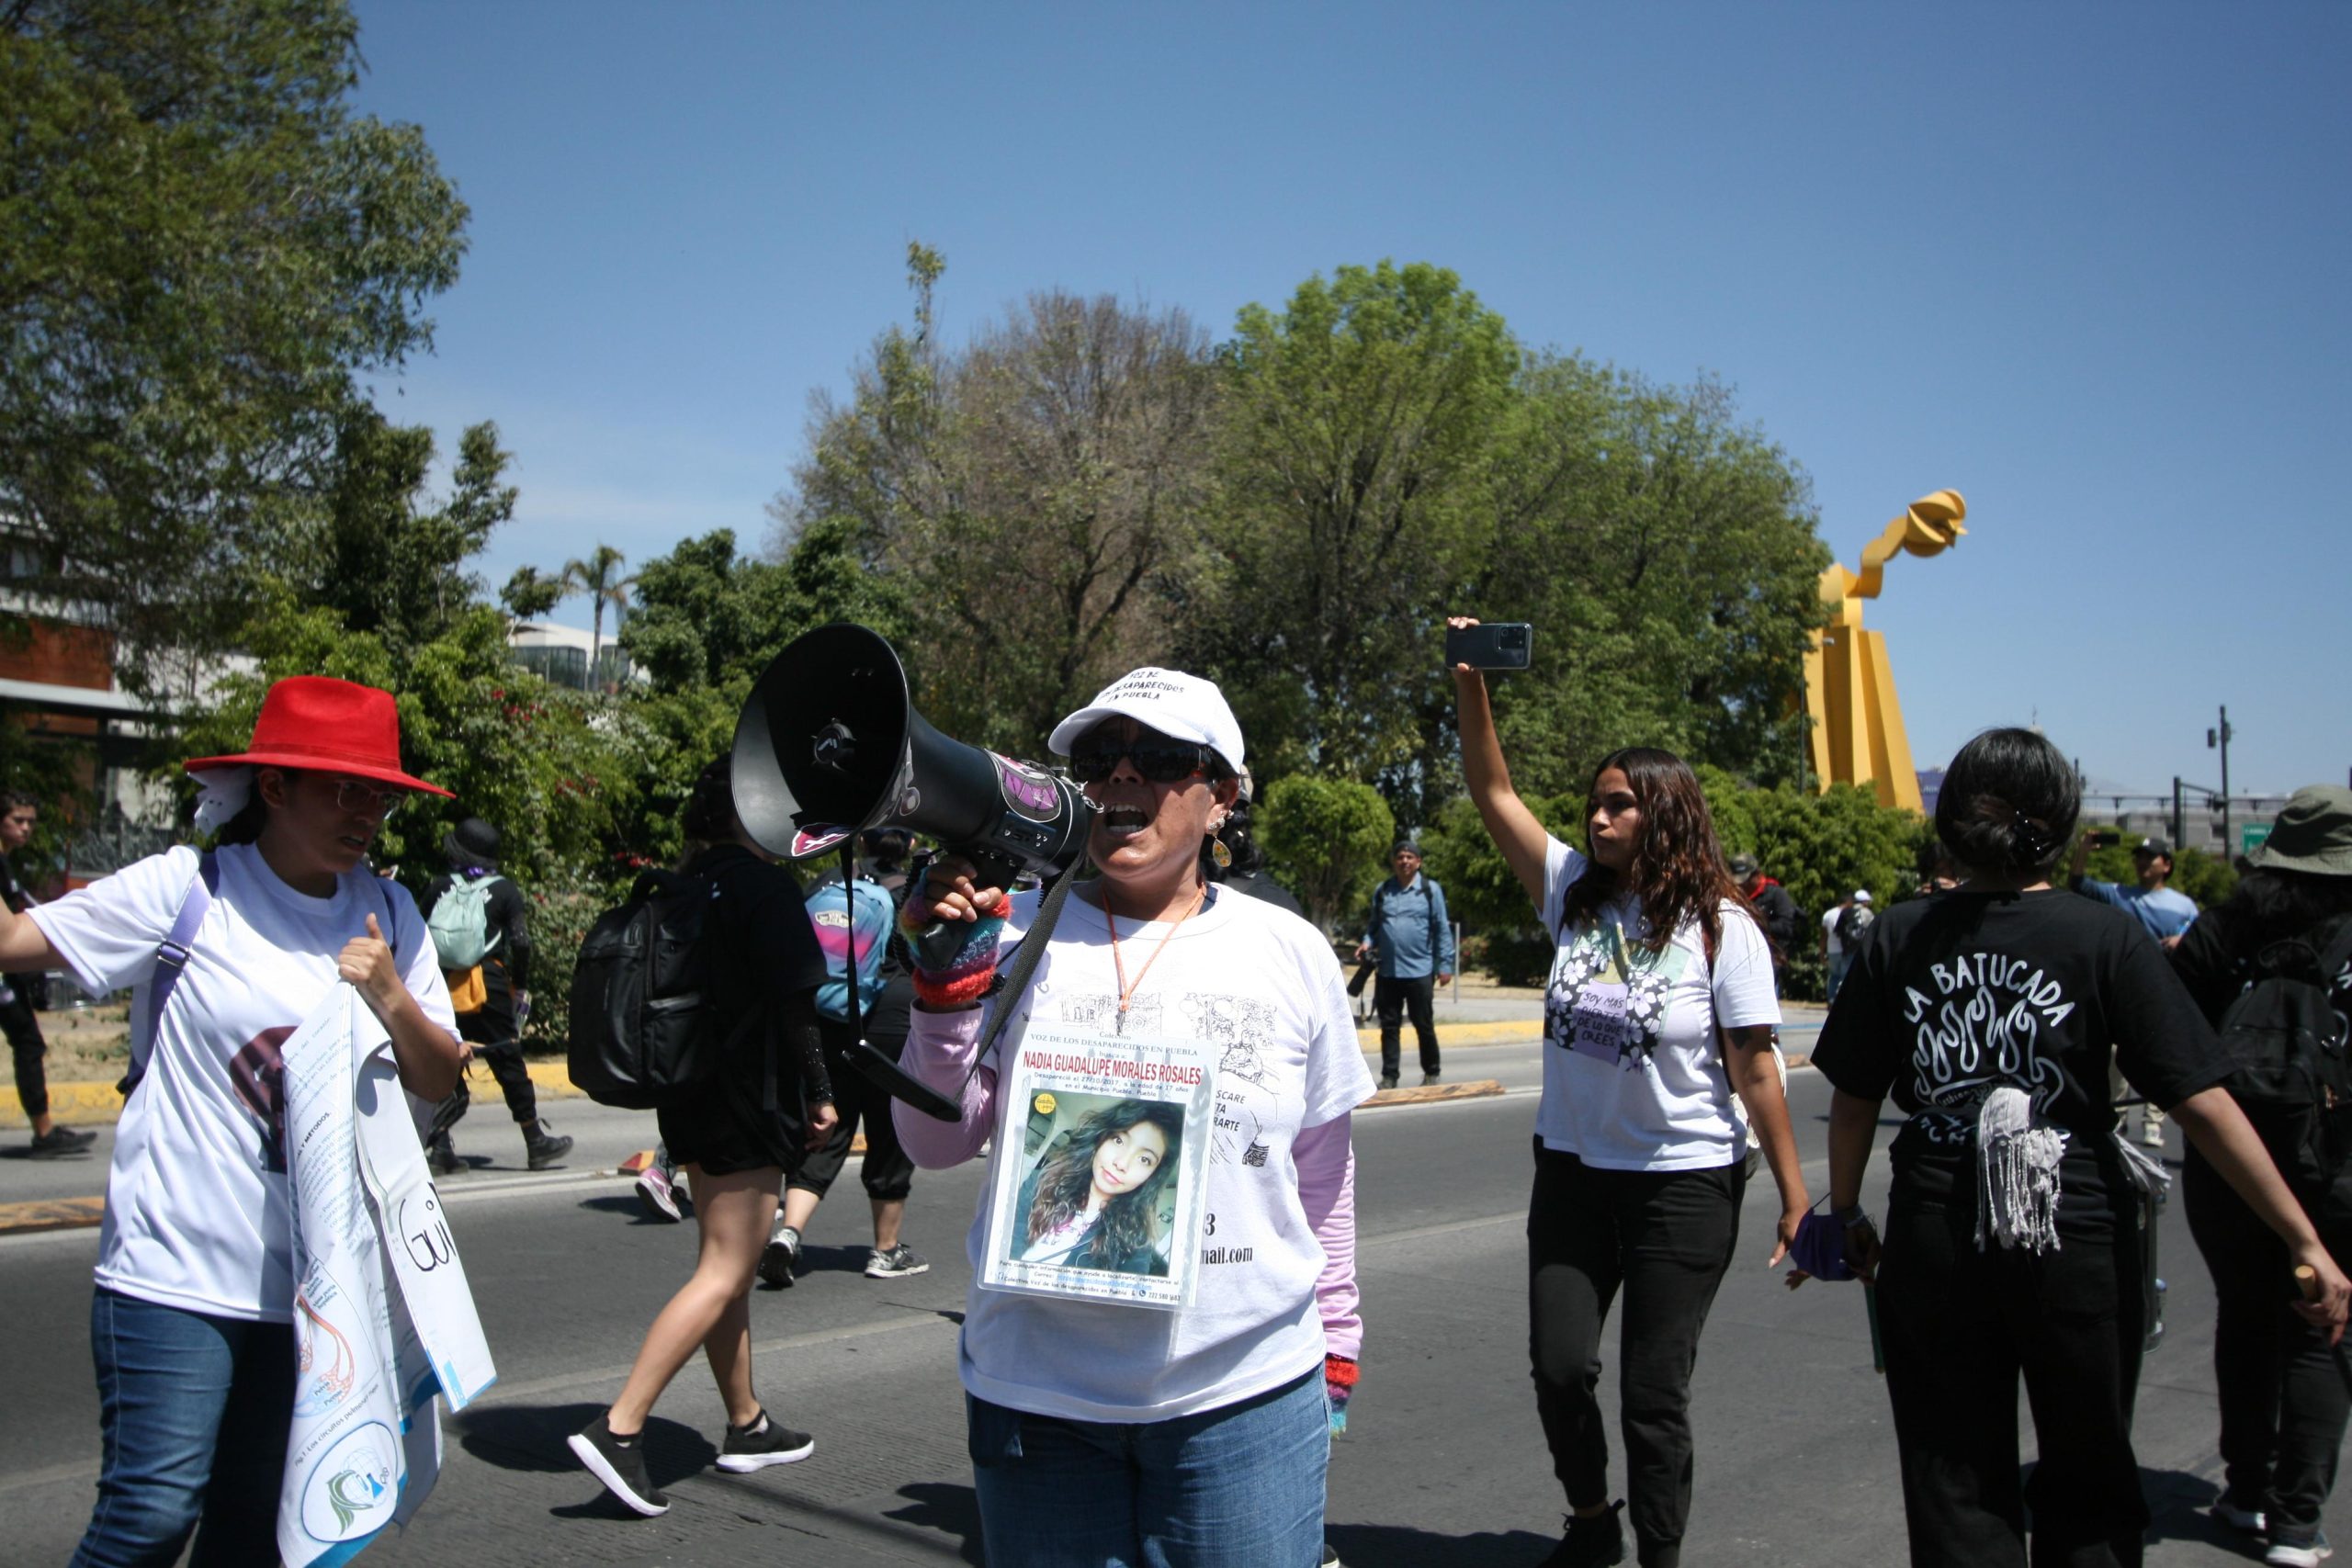 Hoy, las mujeres marchan por el pleno respeto a sus derechos humanos: Salomón